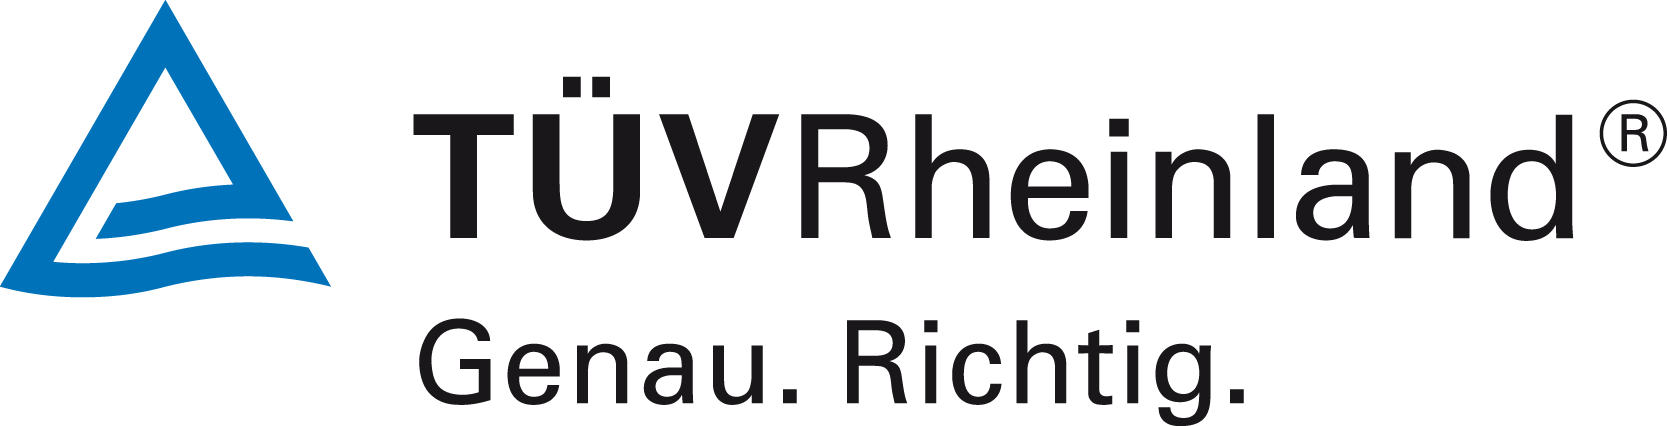 T�V Rheinland